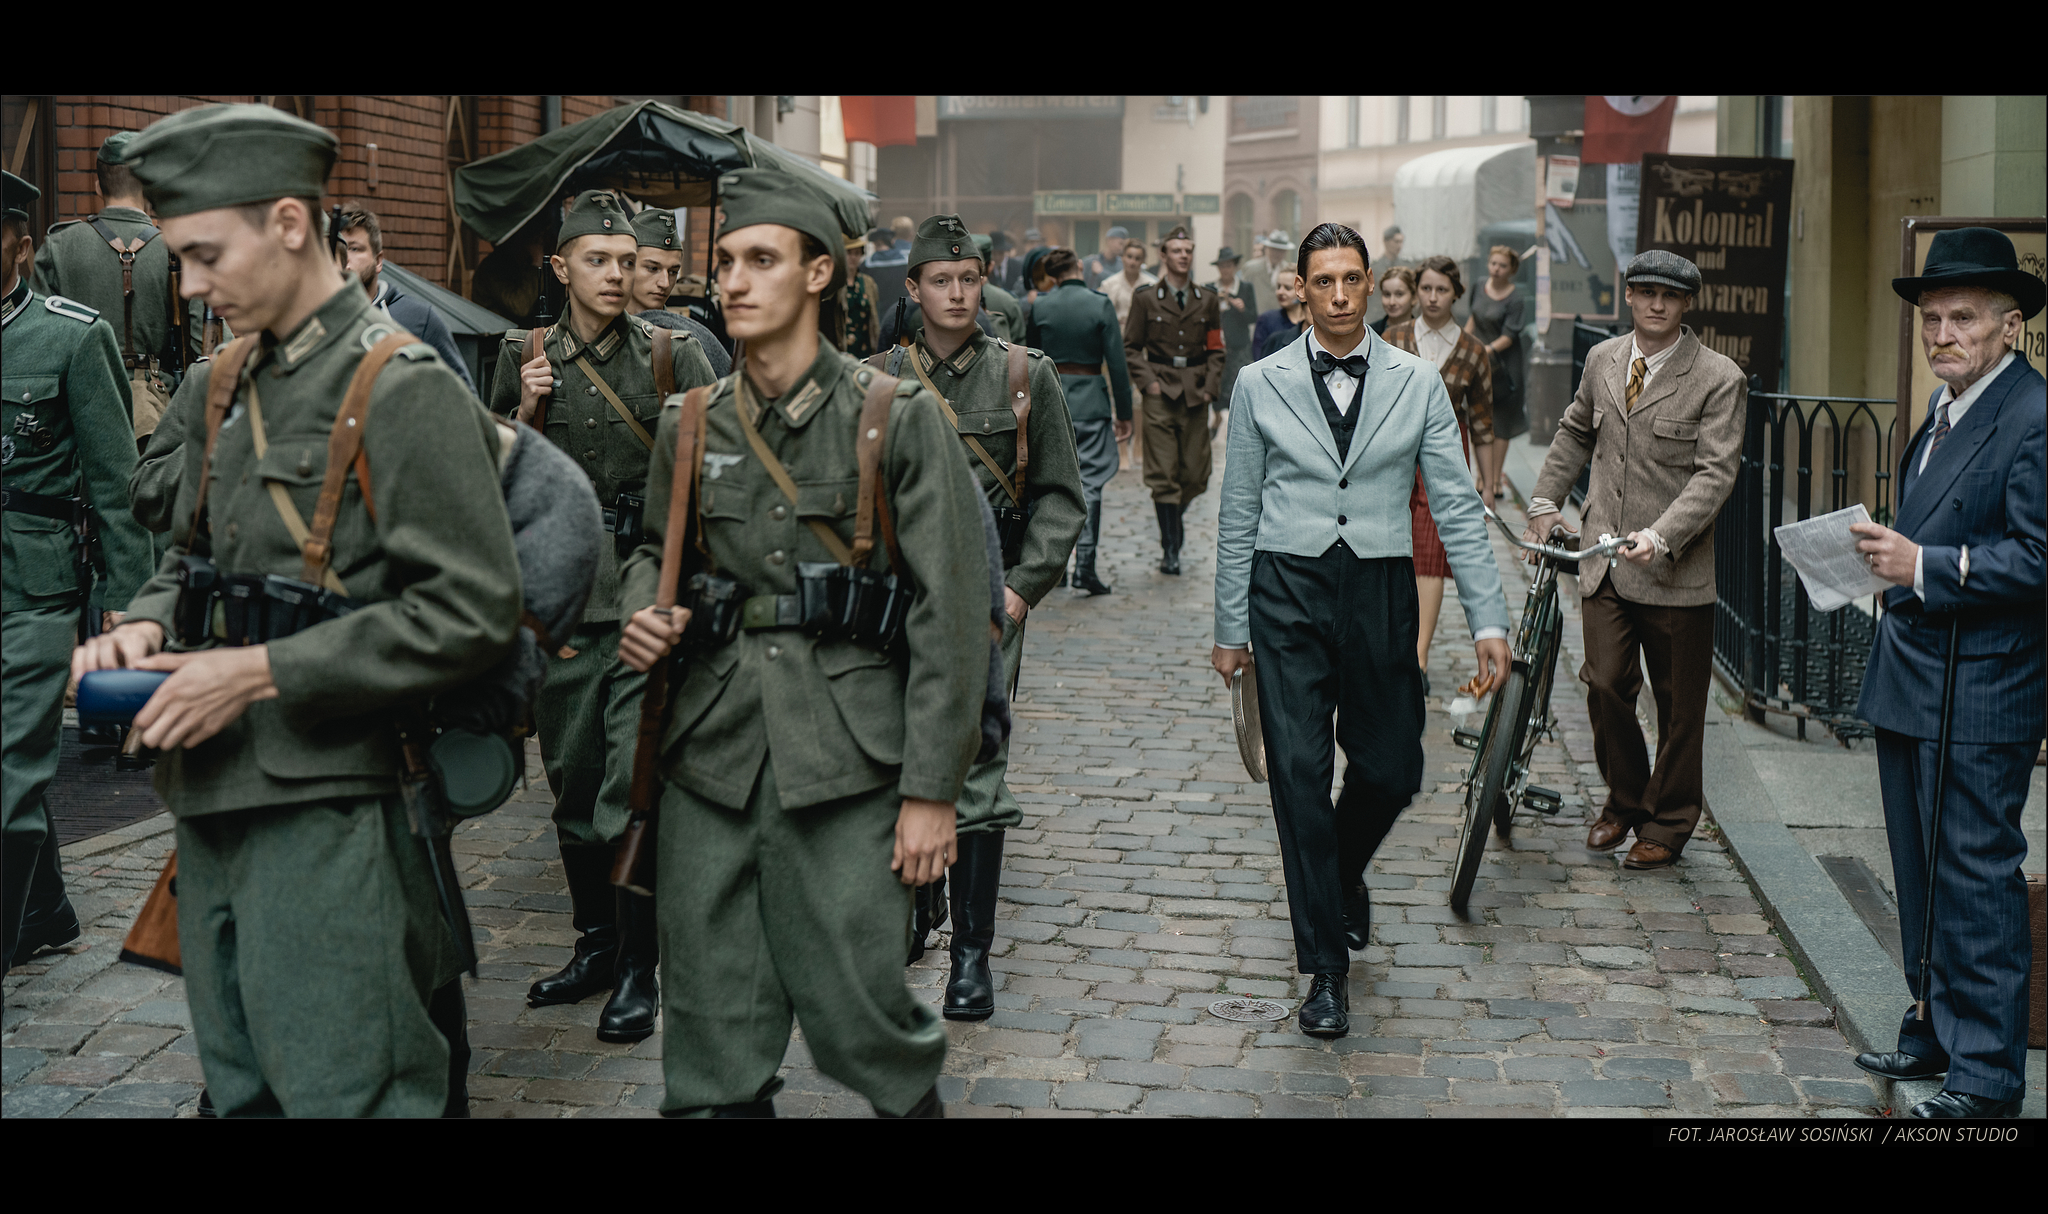 Filip idzie po zatłoczonej ulicy. Obok niego idą niemieccy żołnierze.